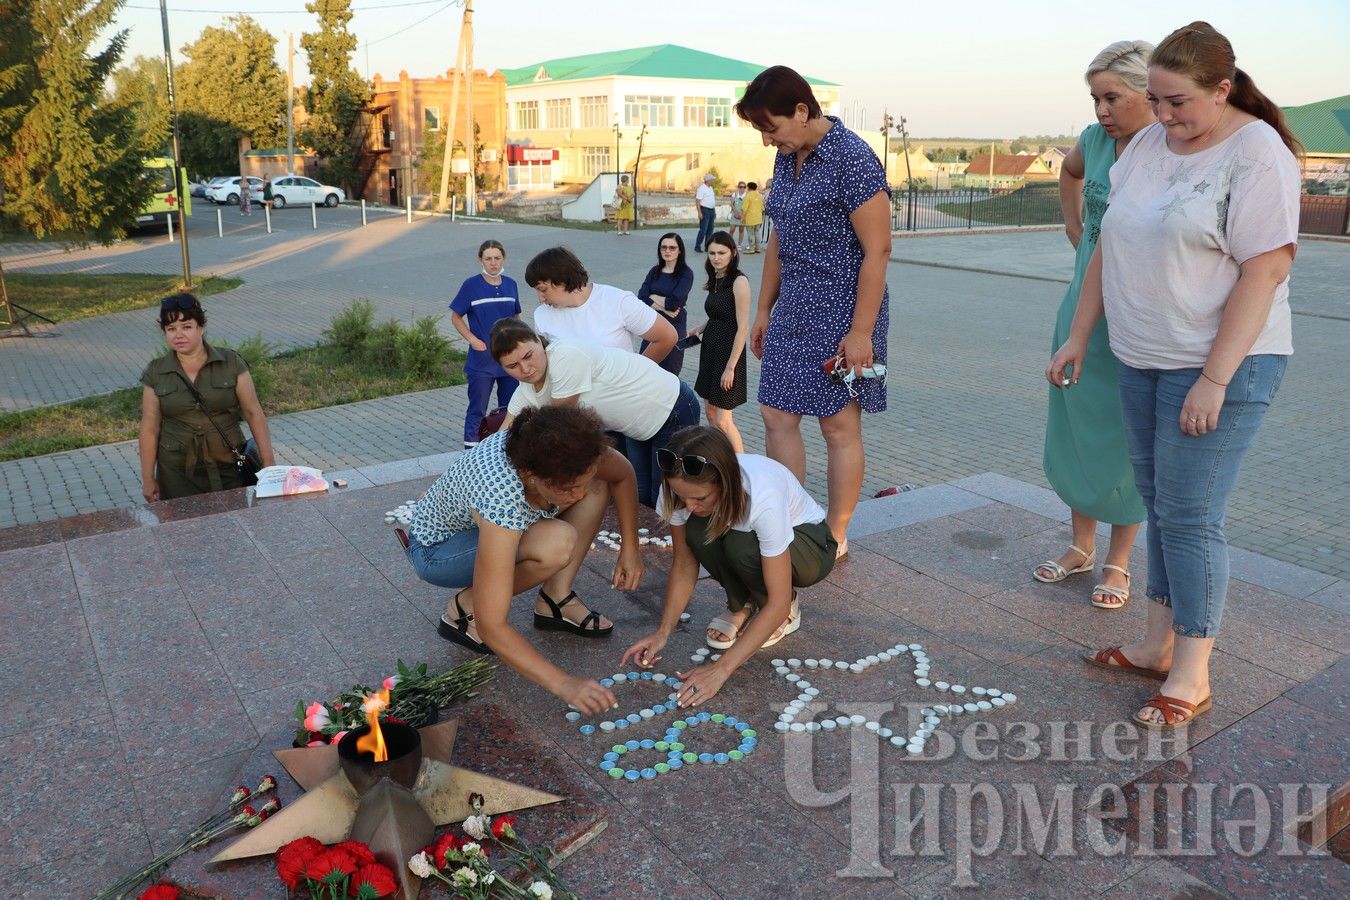 Черемшанцы в День памяти и скорби возле Вечного огня сделали надпись из свеч